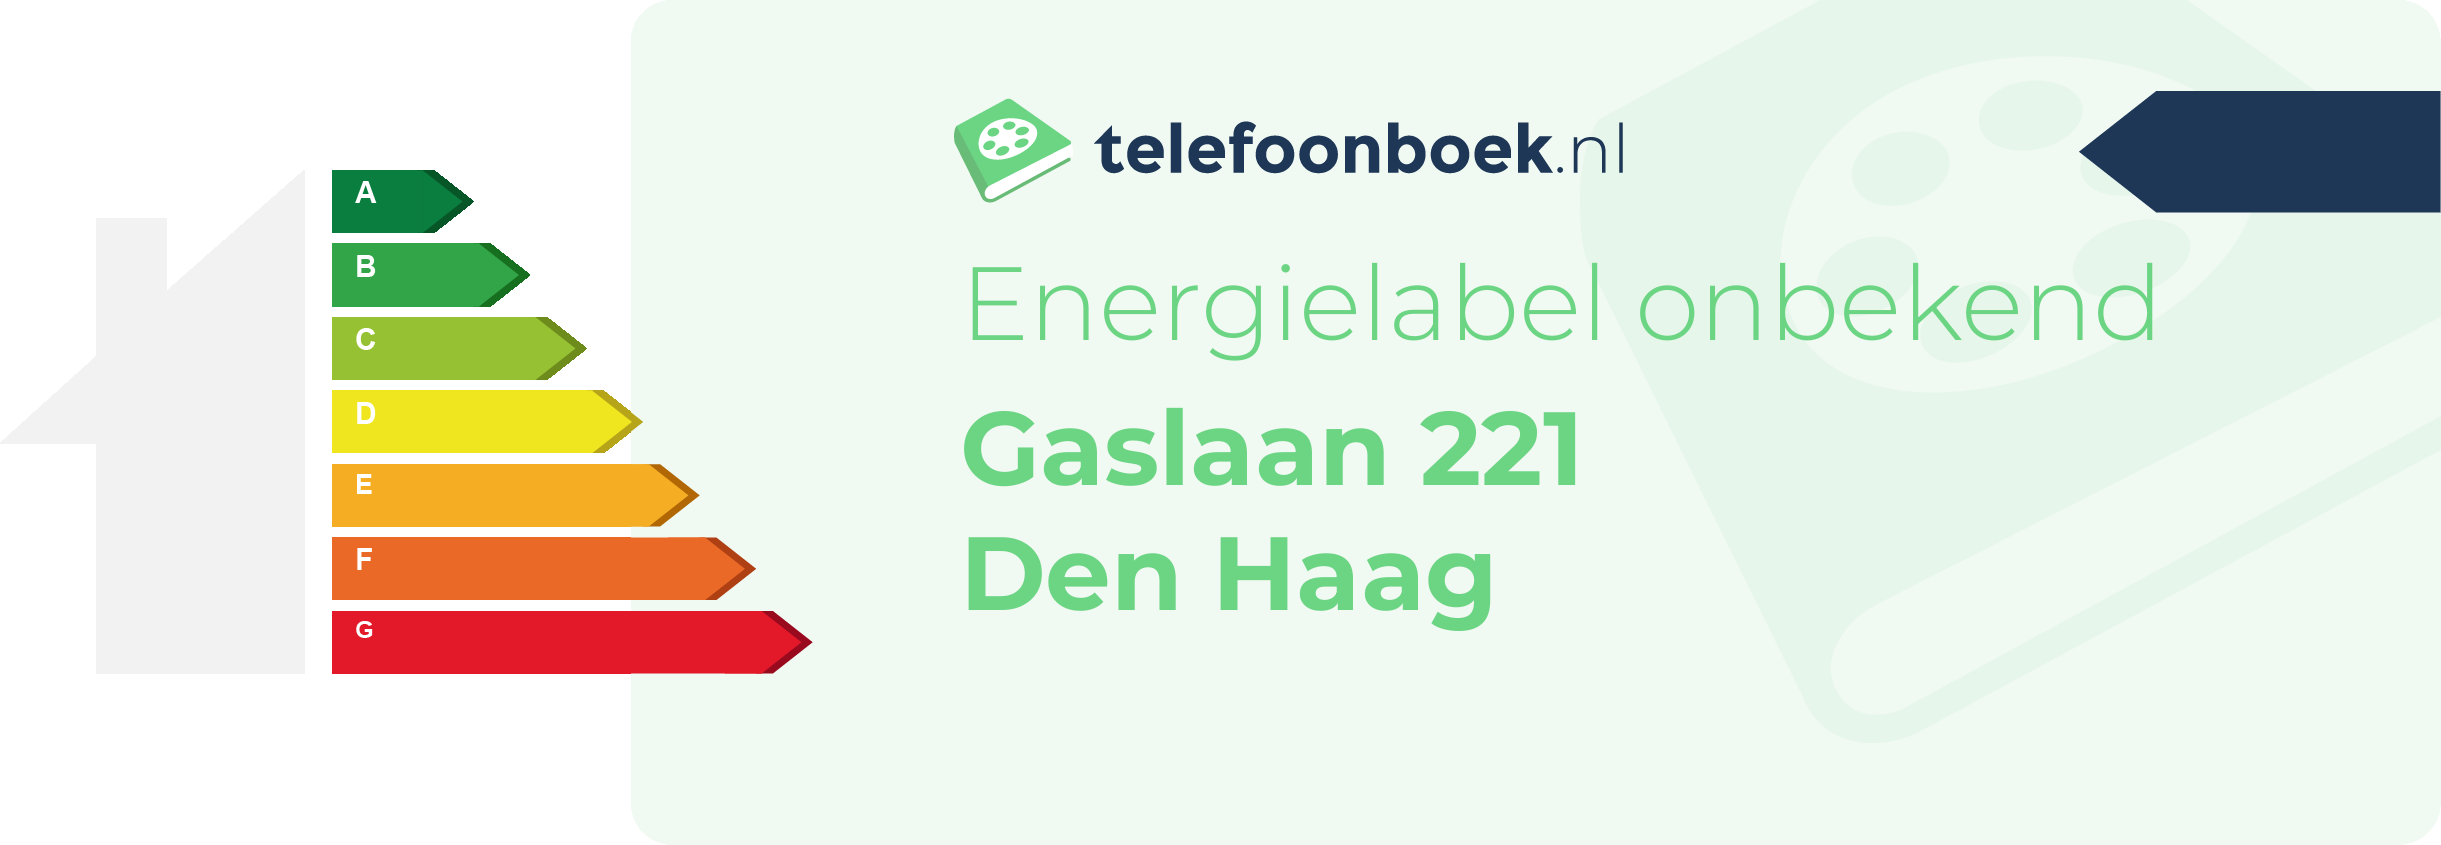 Energielabel Gaslaan 221 Den Haag